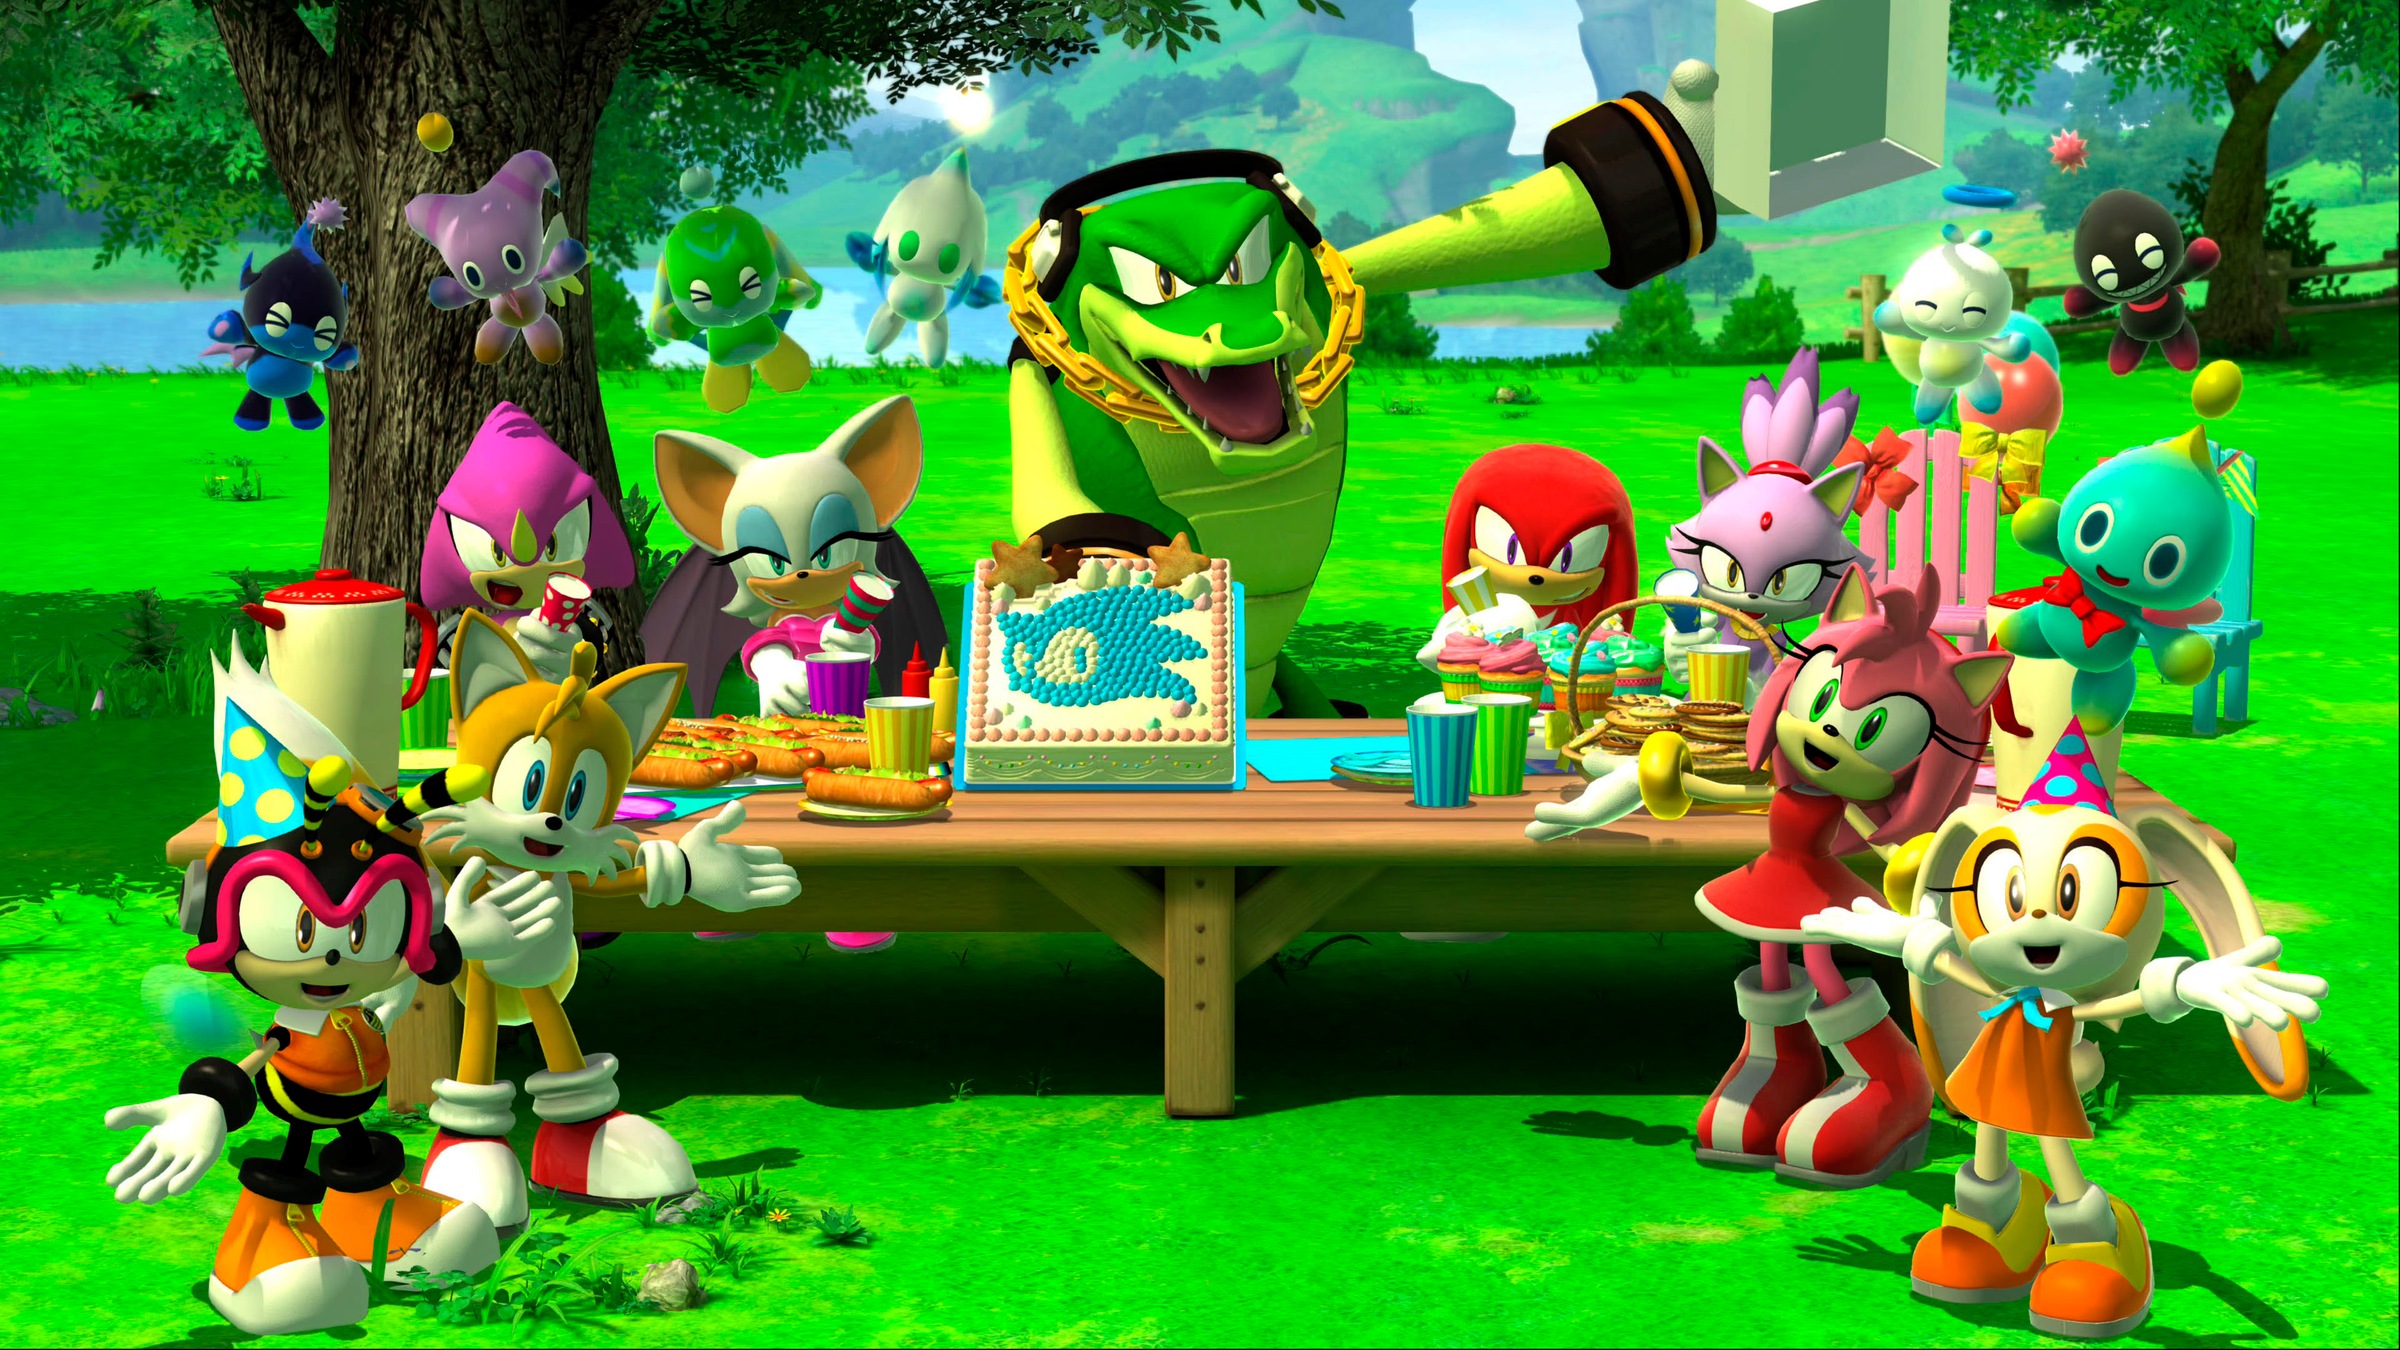 Atlus Spielesoftware »Sonic x Shadow Generations«, Xbox One-Xbox One X